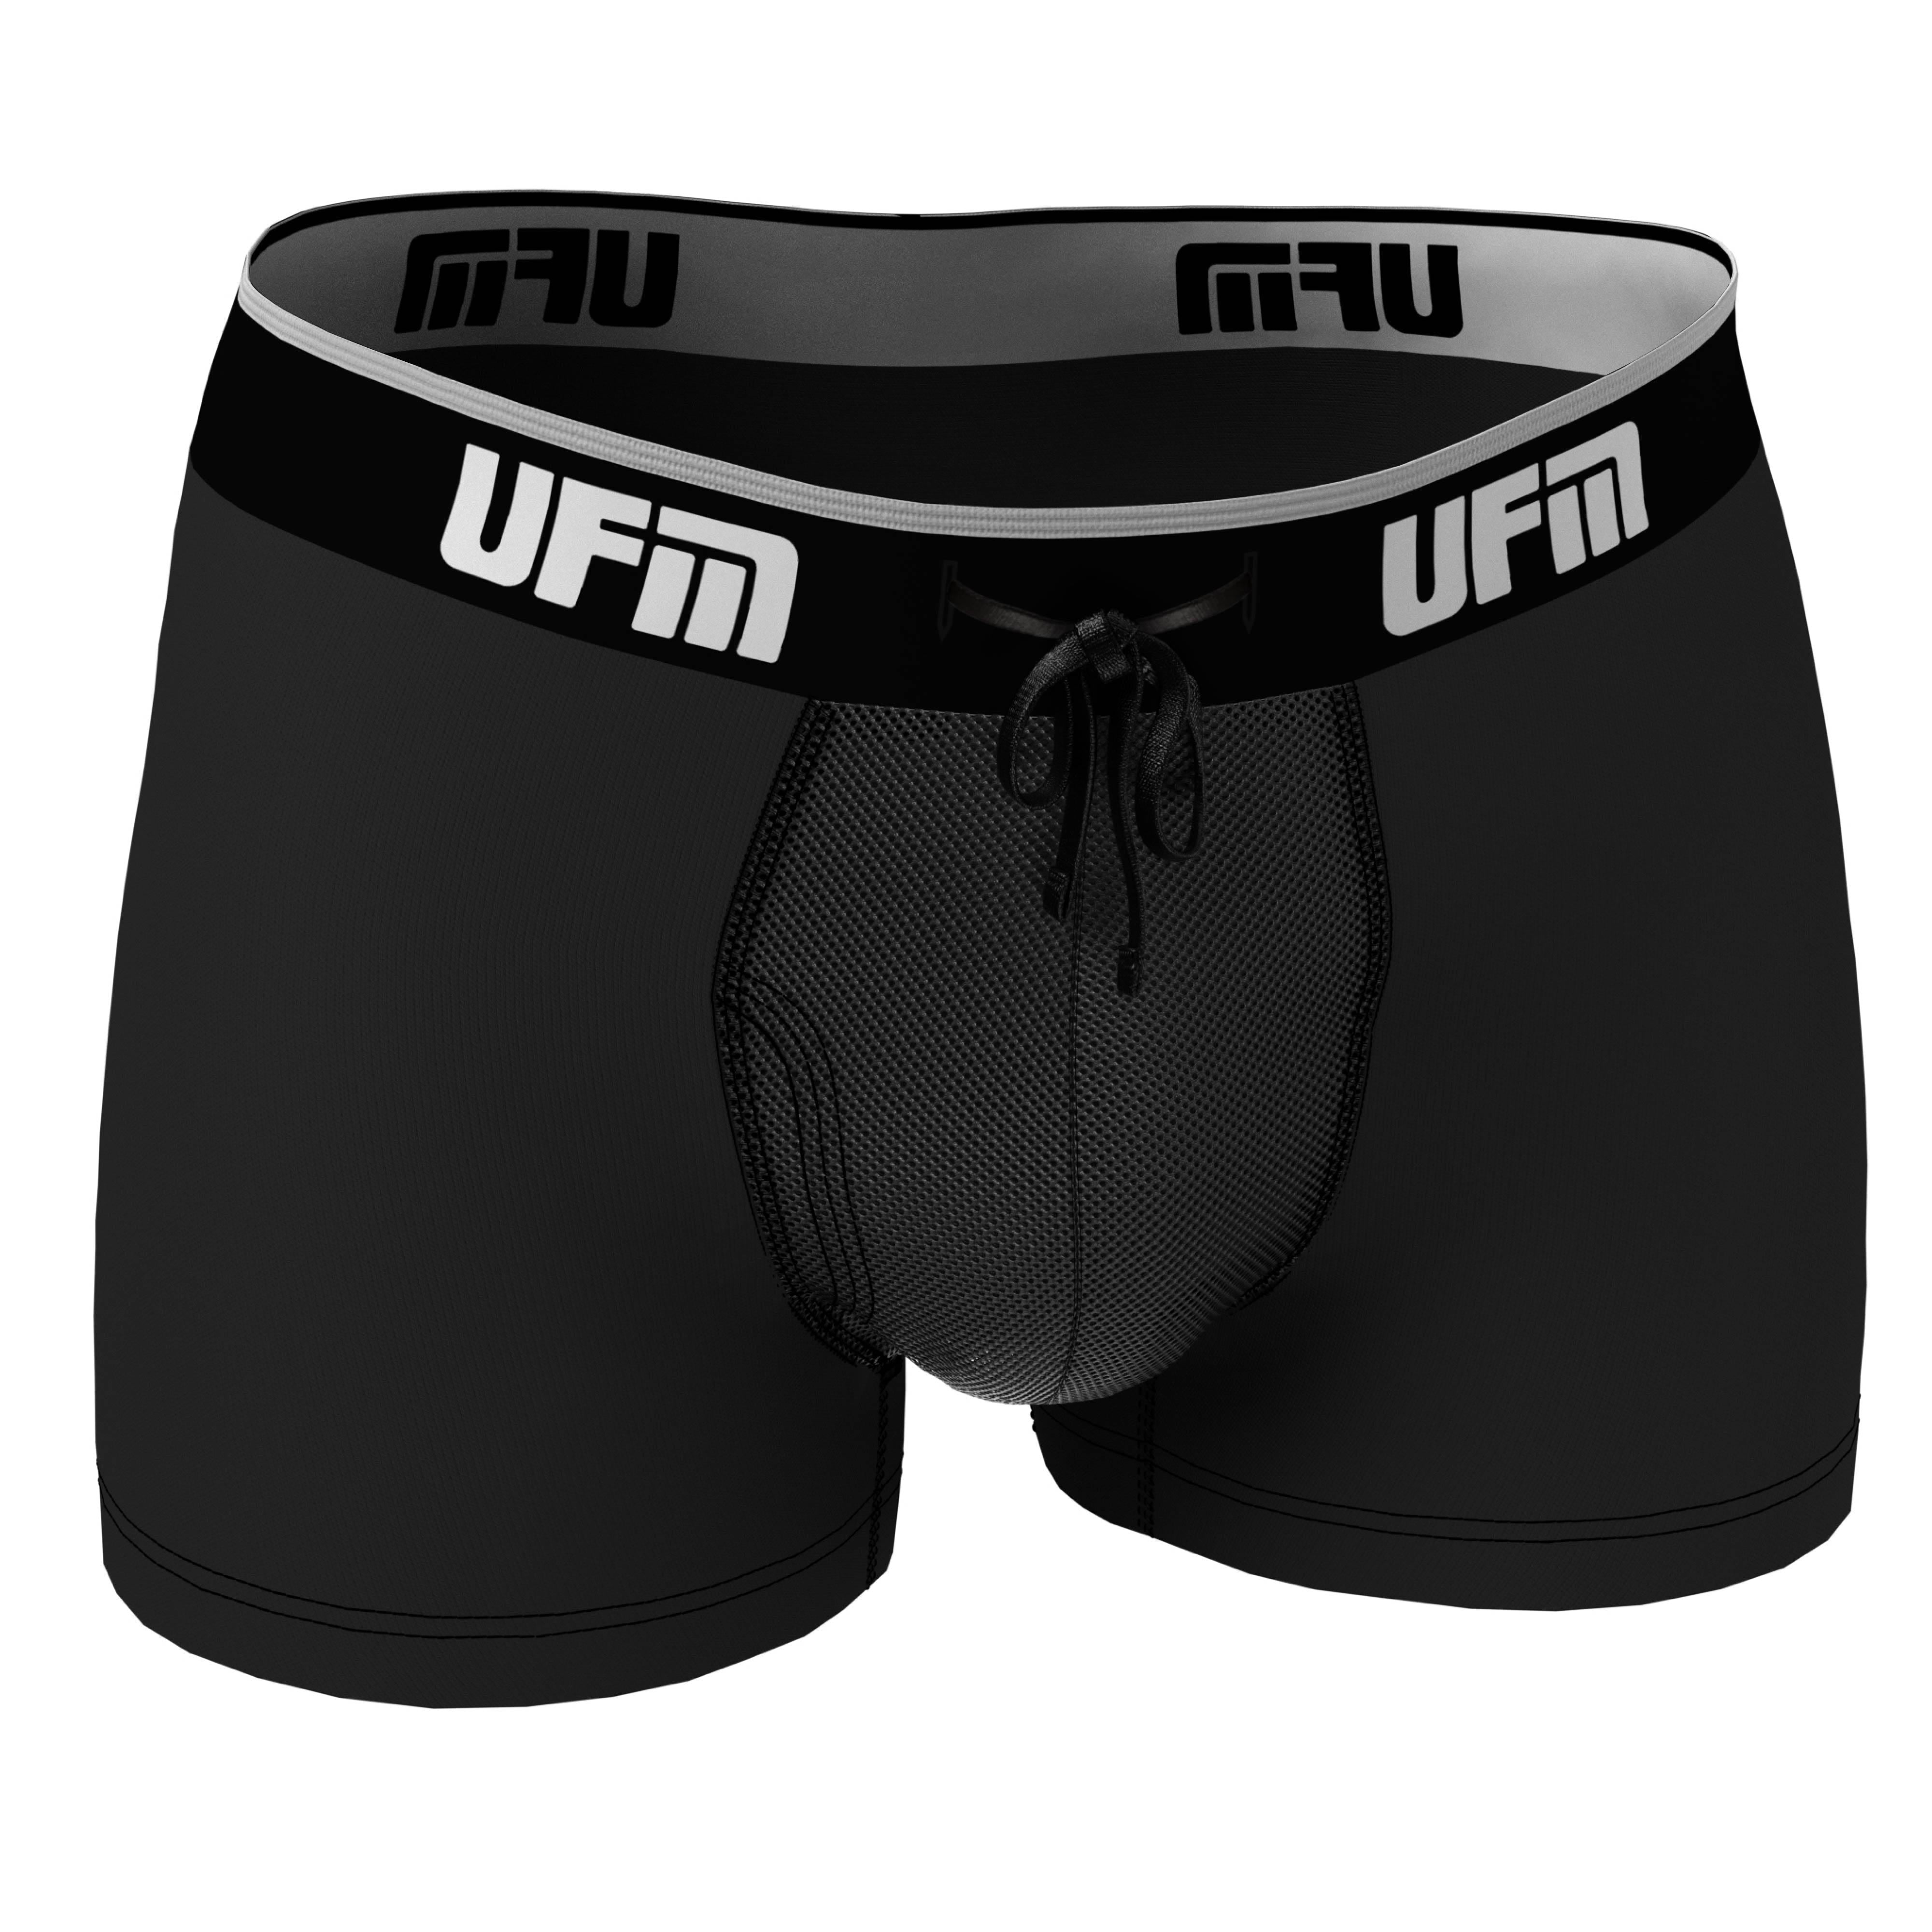 Seller UFM Underwear for Men